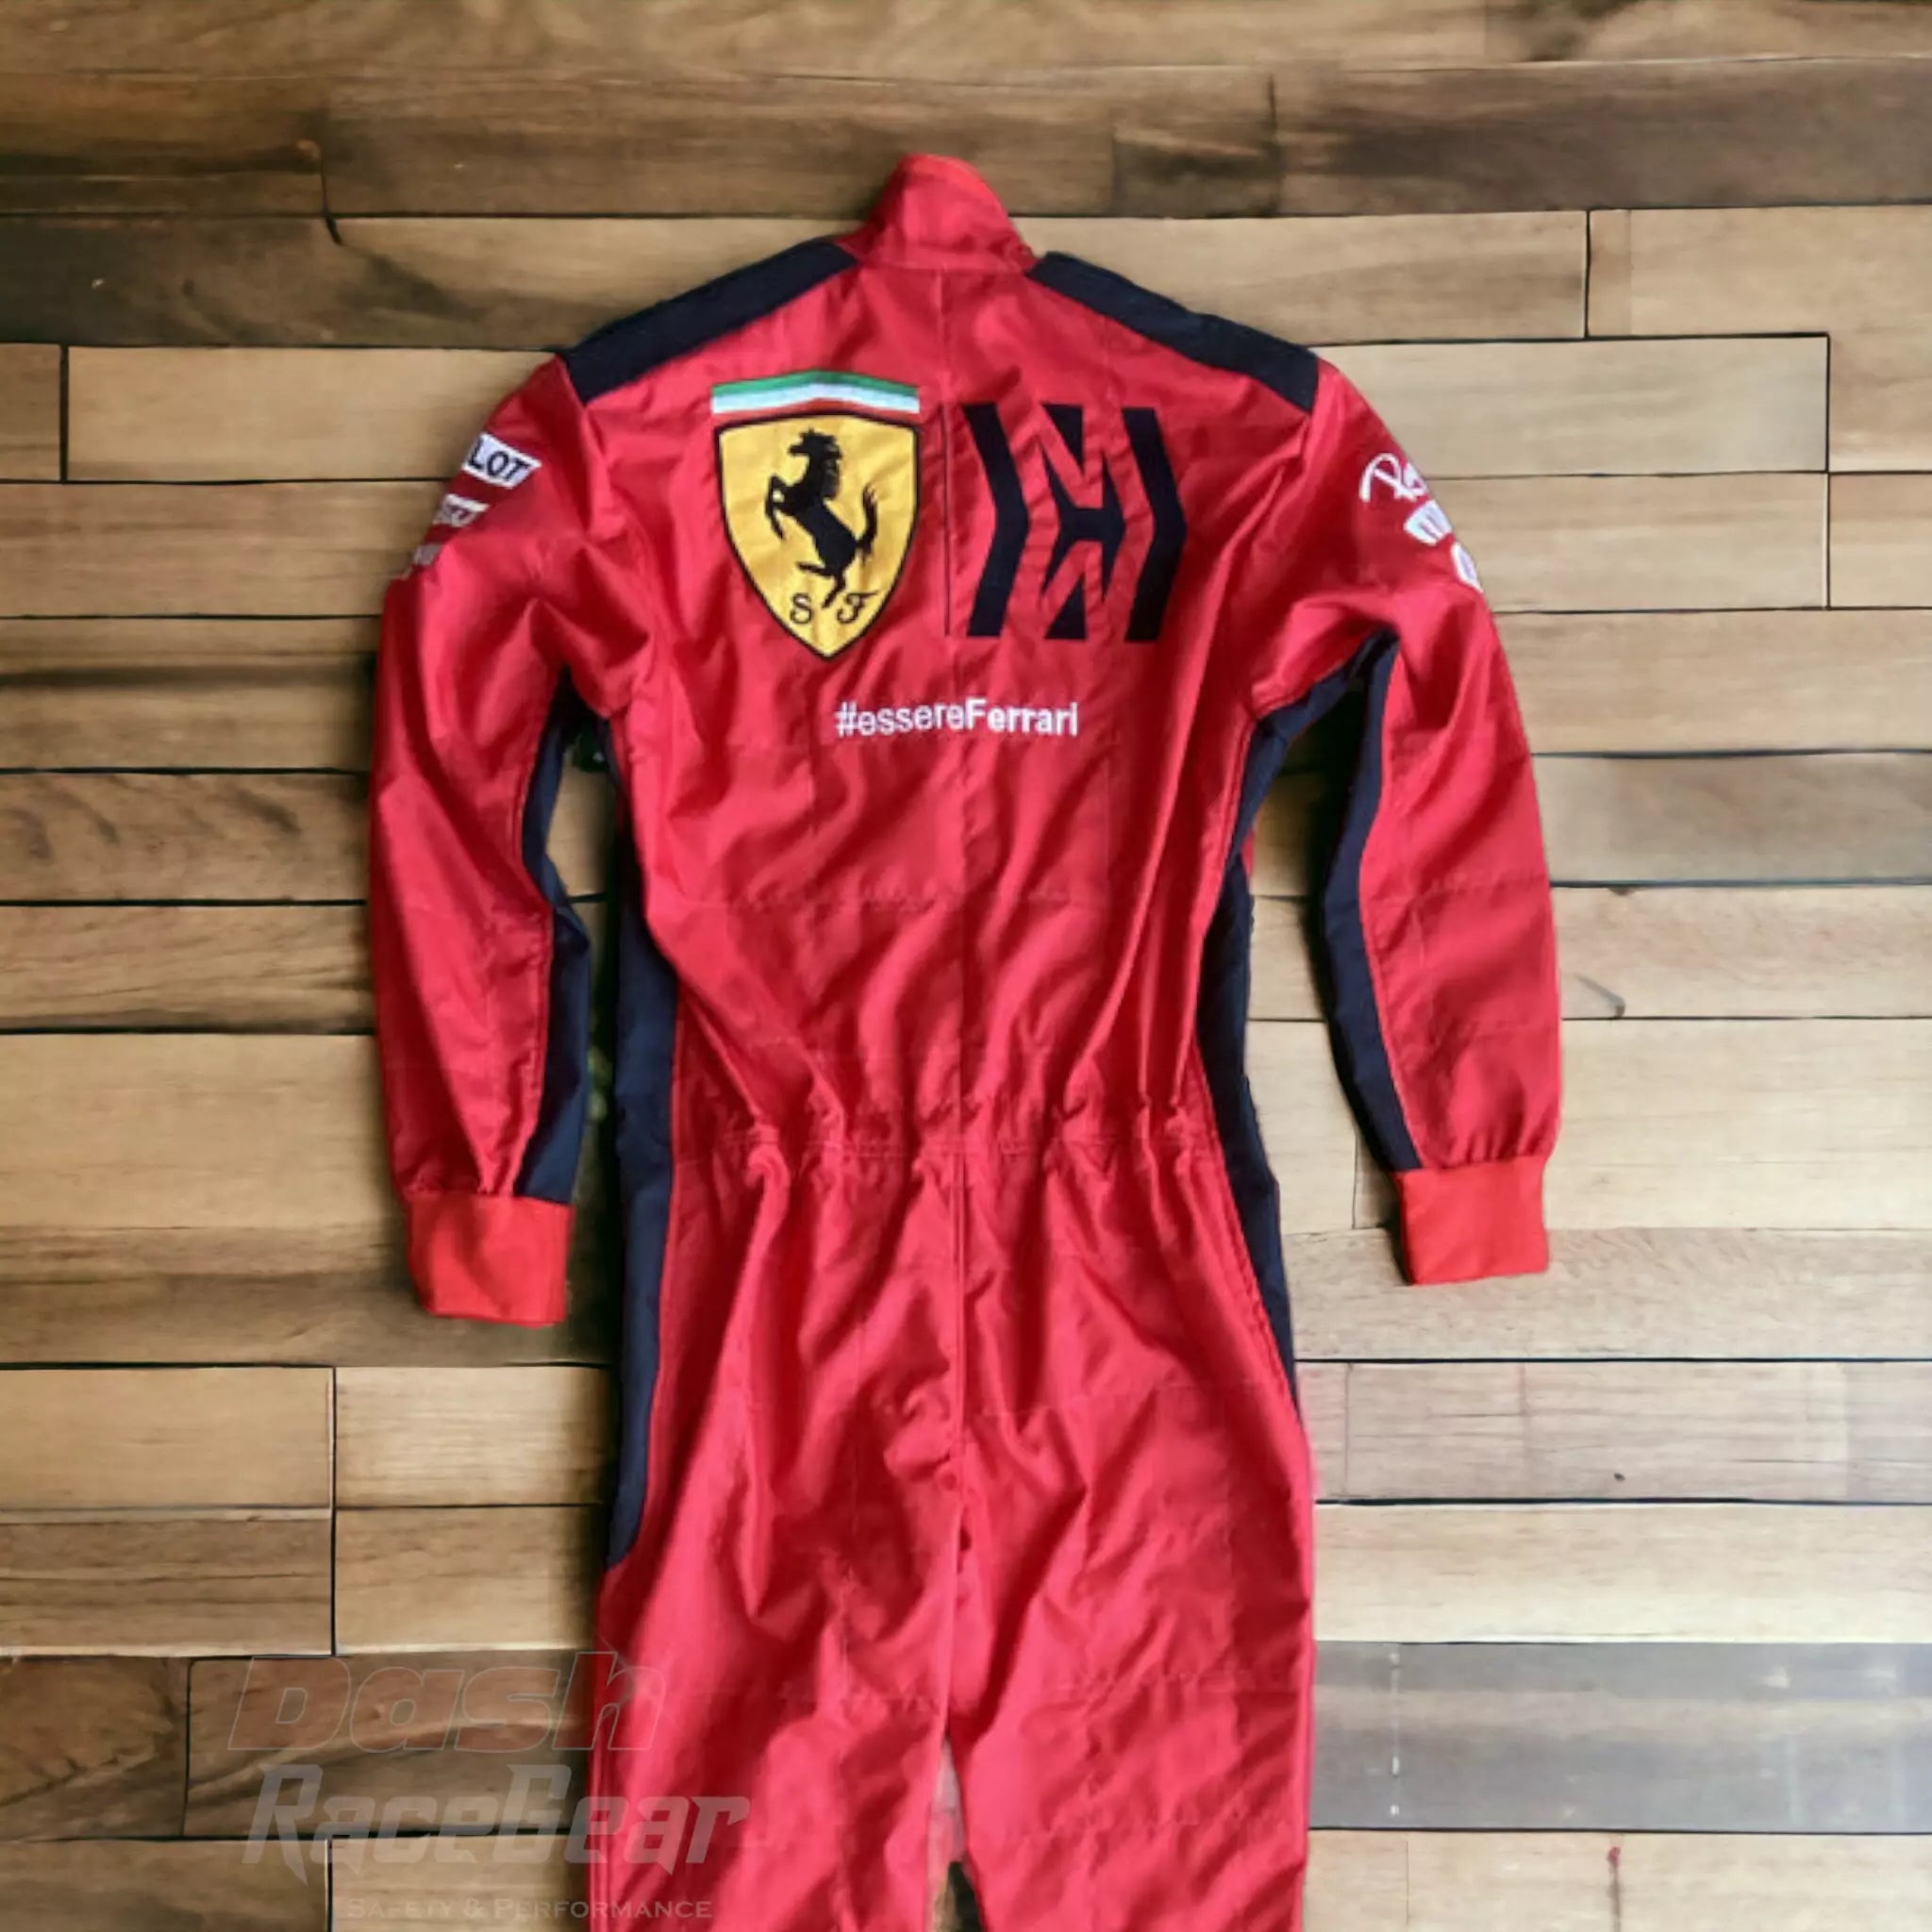 2020 Sebastian Vettel Ferrari Mission Winnow F1 Embroidered Racing suit